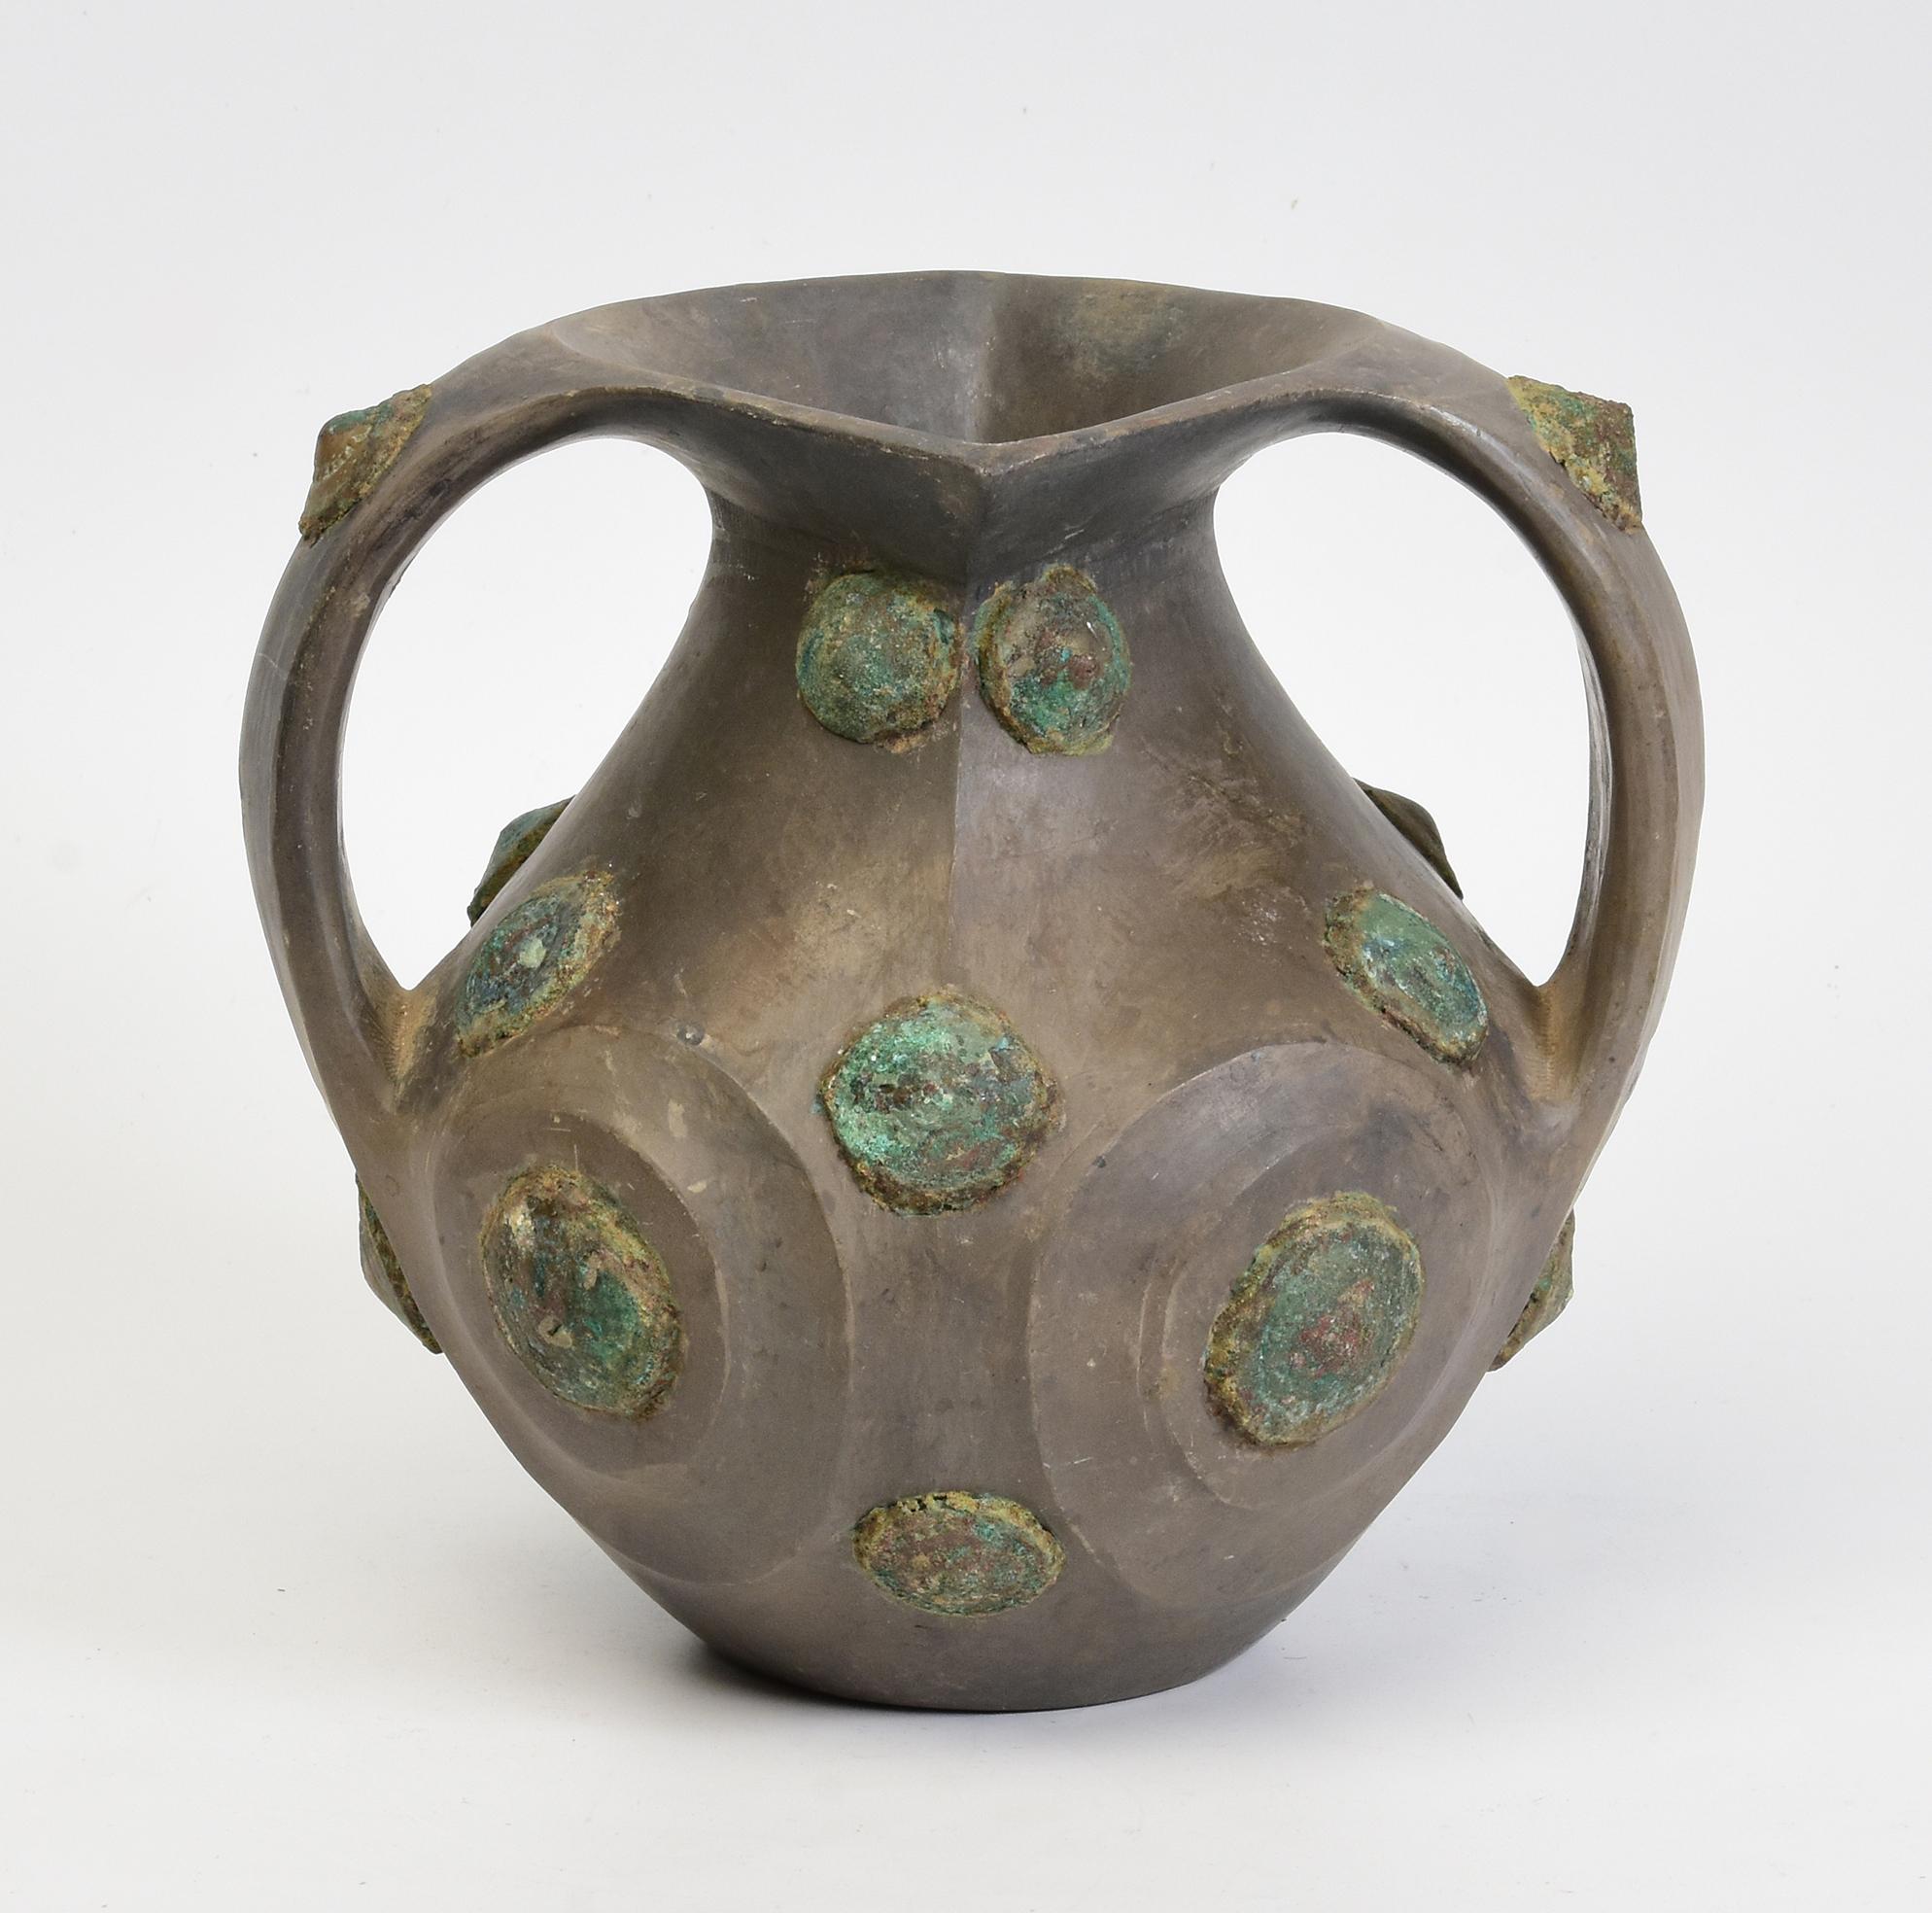 Seltene antike chinesische Amphora aus Keramik, verziert mit Bronze-Ornamenten.
In der Vergangenheit wurde diese Art von Gefäß als Weinbehälter verwendet. 

Alter: China, Han-Dynastie, 206 v. Chr. - 220 n. Chr.
Größe: Höhe 19,5 C.M. / Breite 21